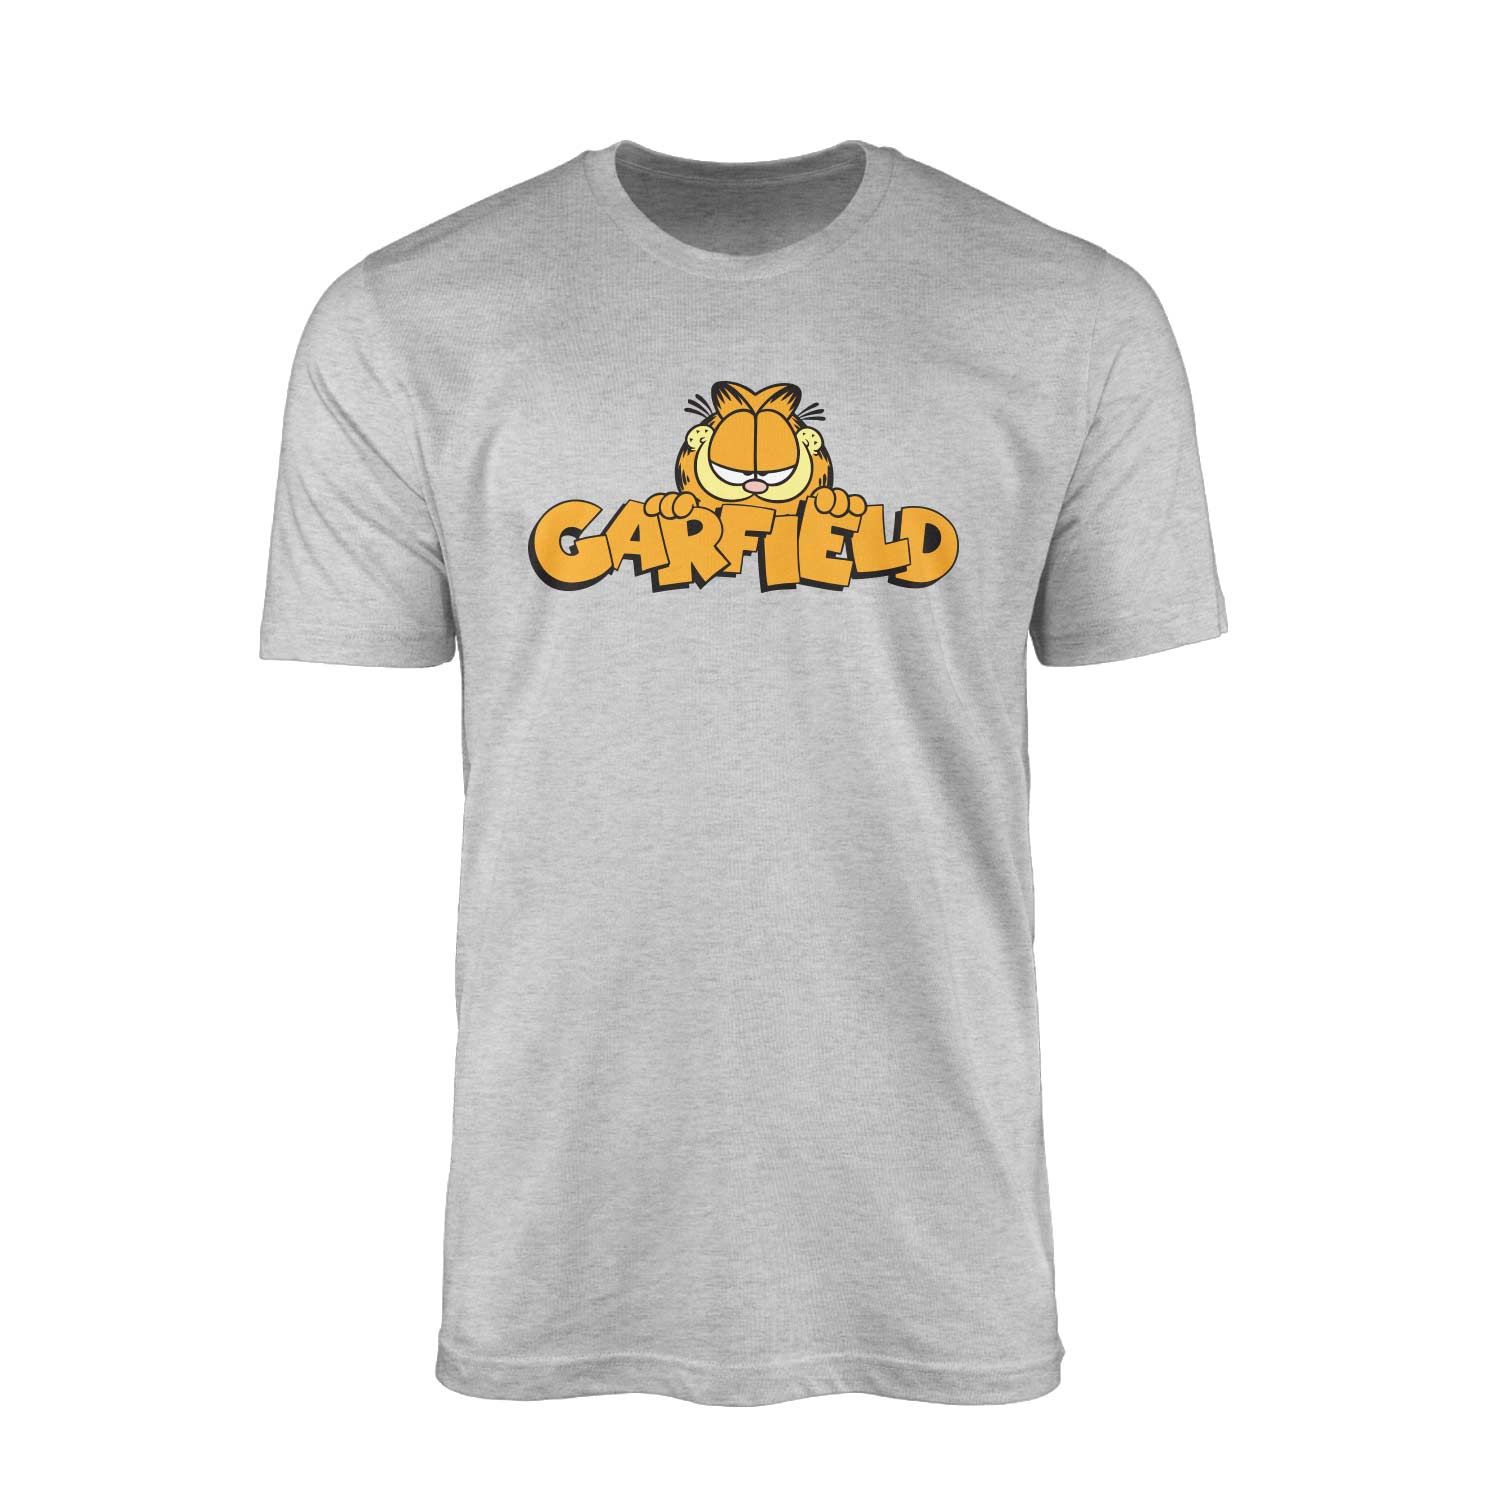 Garfield Gri Tişört